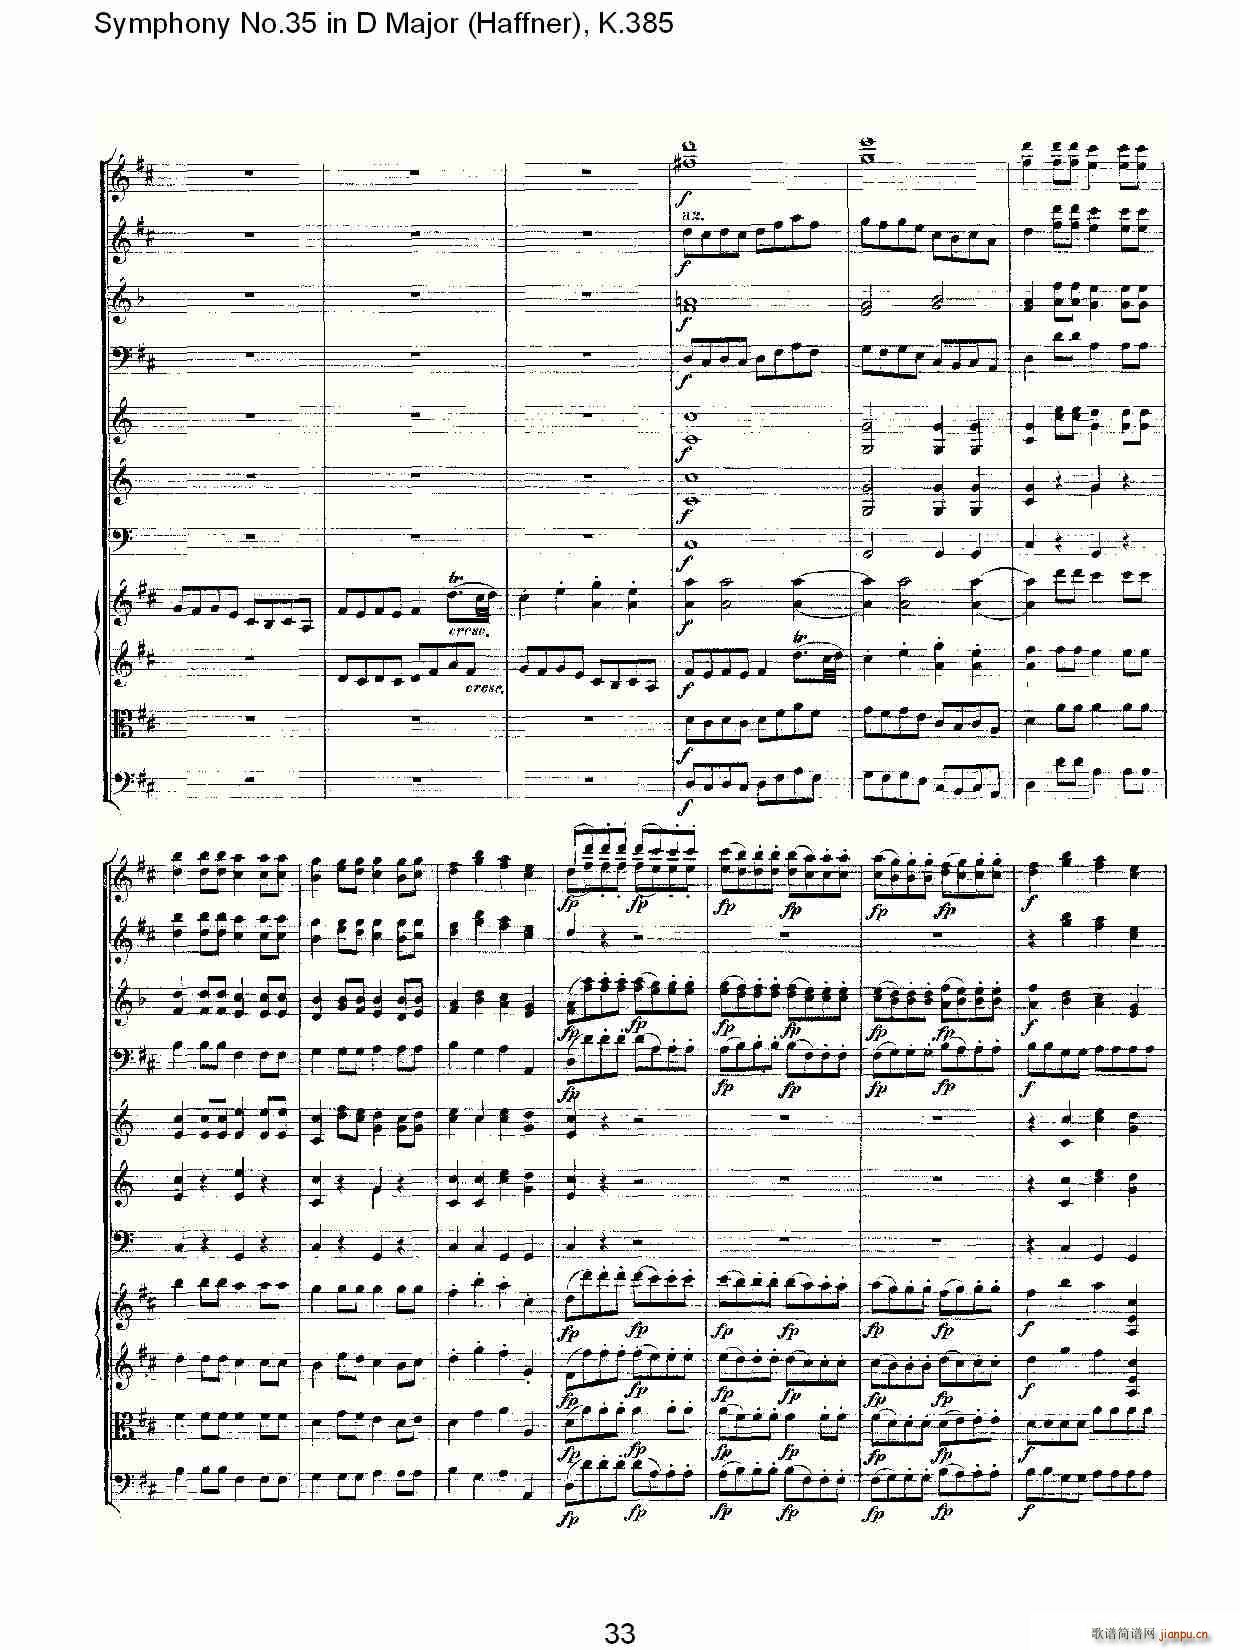 Symphony No.35 in D Major, K.385(ʮּ)33